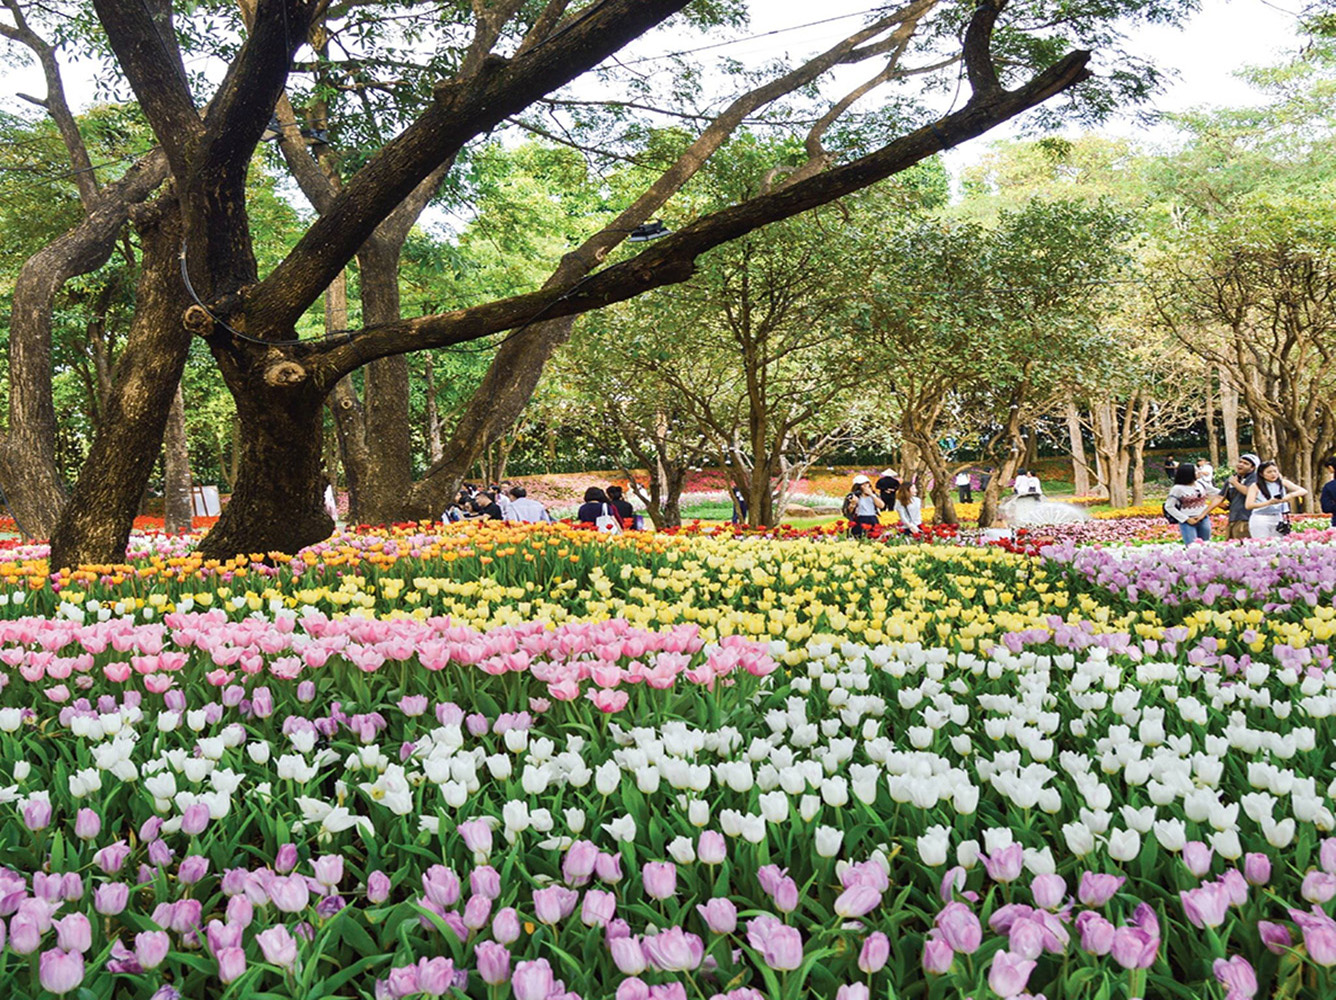 Chiang Rai ASEAN Flower Festival: 25 Dec 2019 to 12 Jan 2020